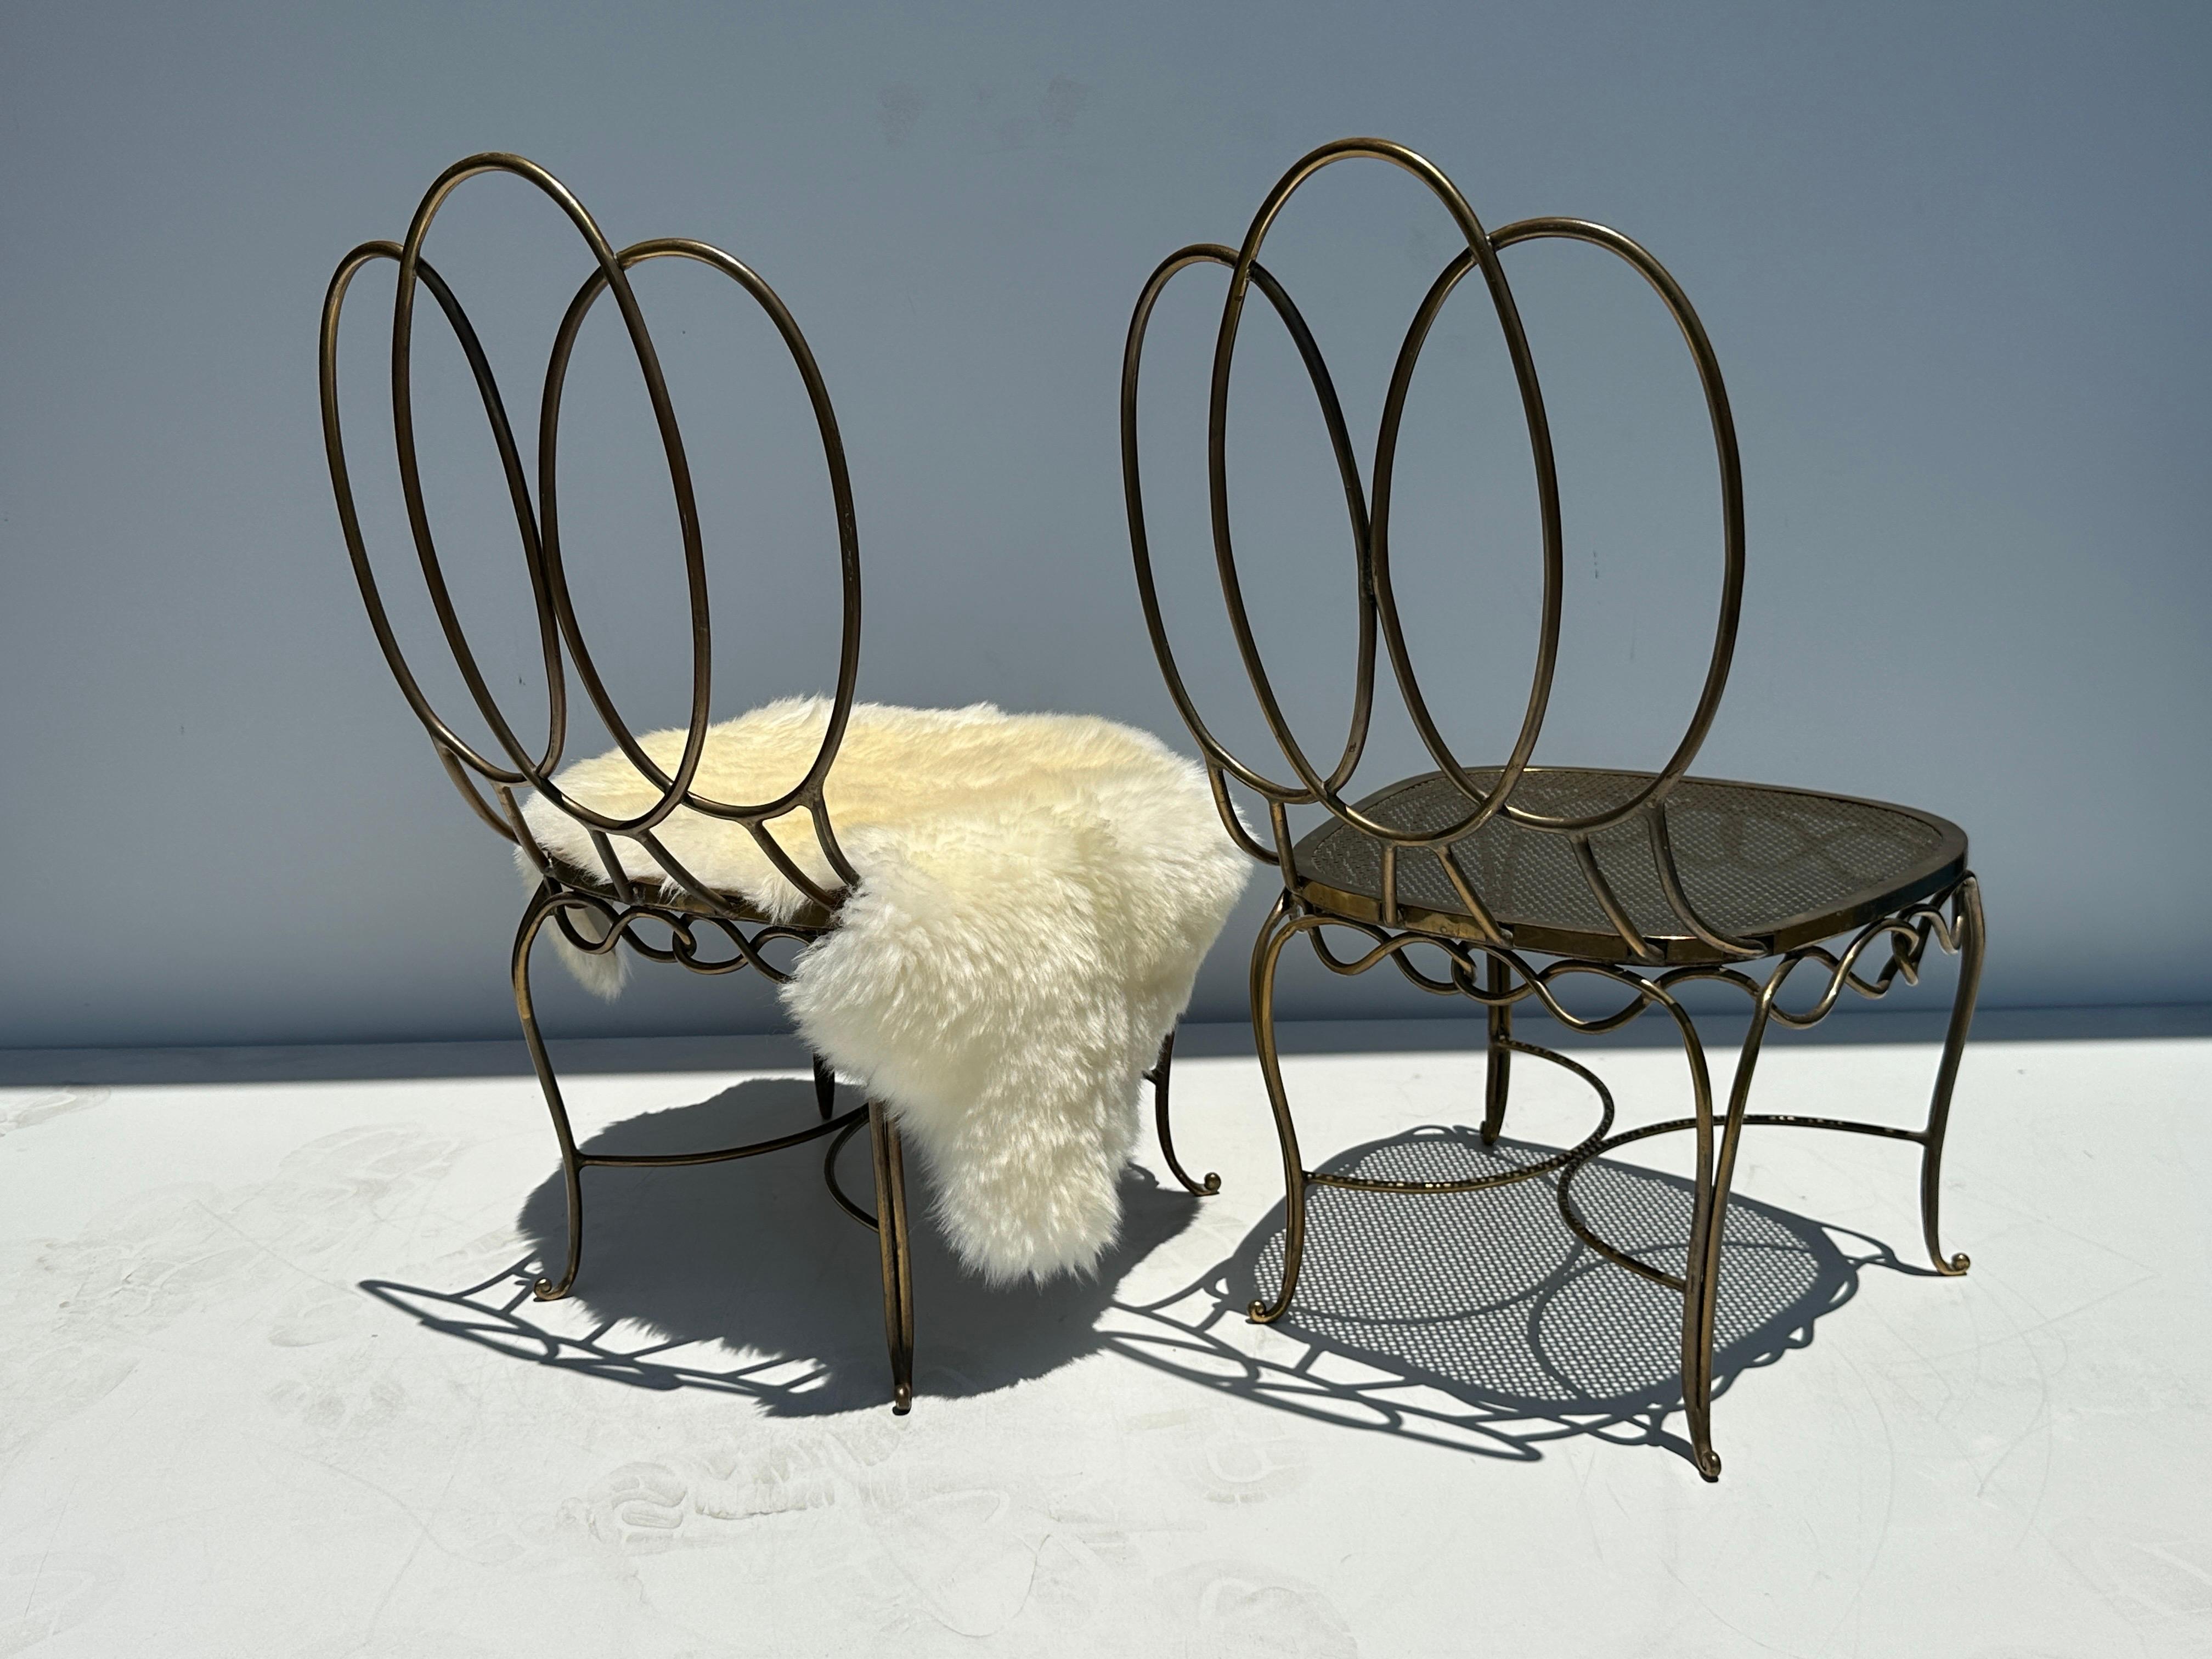 Paire de chaises basses de salon en bronze patiné / laiton dans le style de Jean Royere. La fourrure de mouton représentée est décorative et n'est pas incluse.